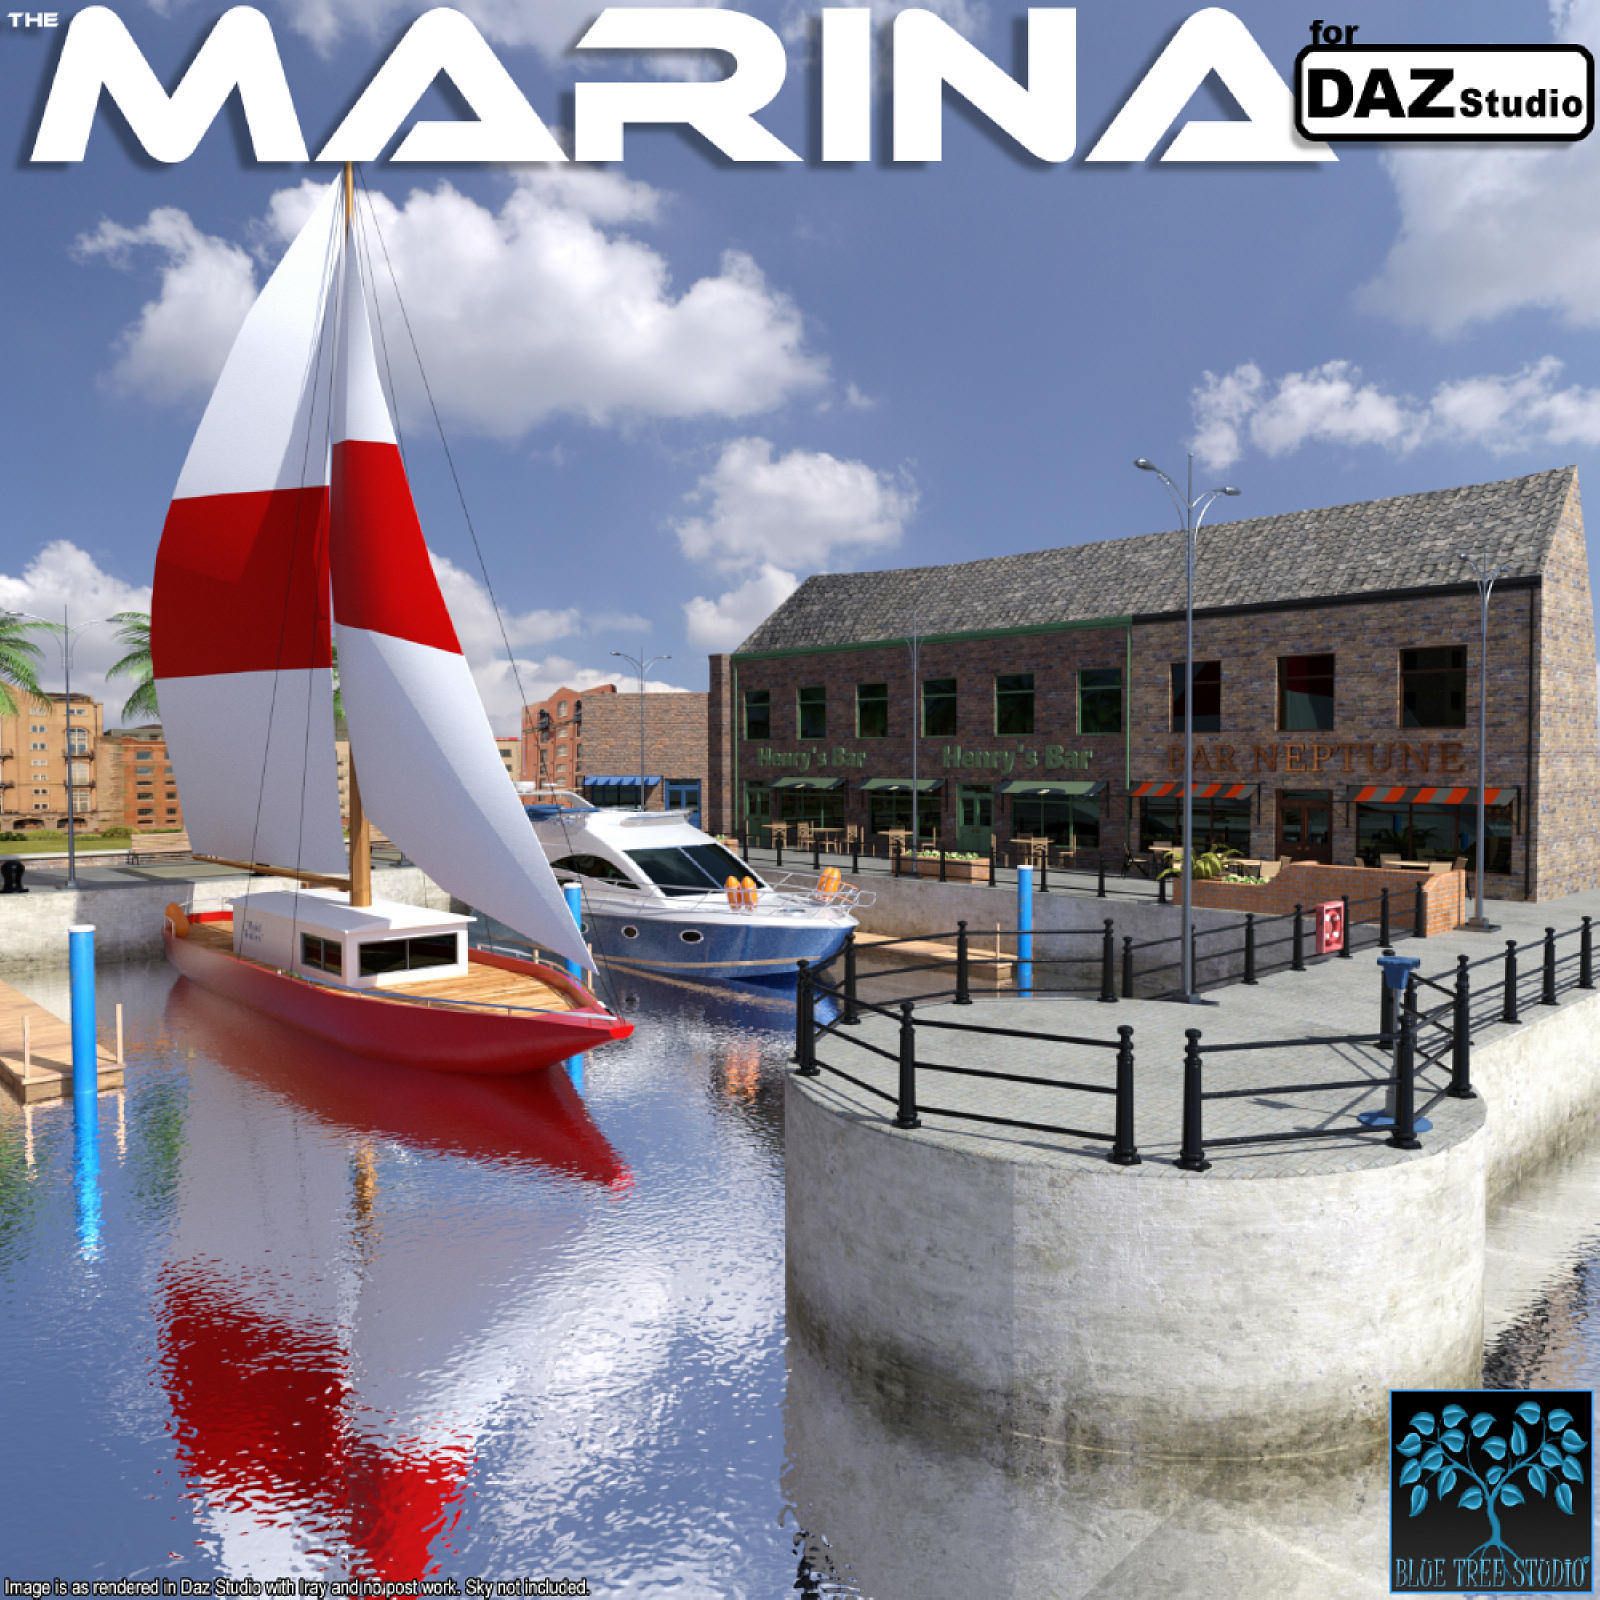 Marina for Daz Studio_DAZ3D下载站